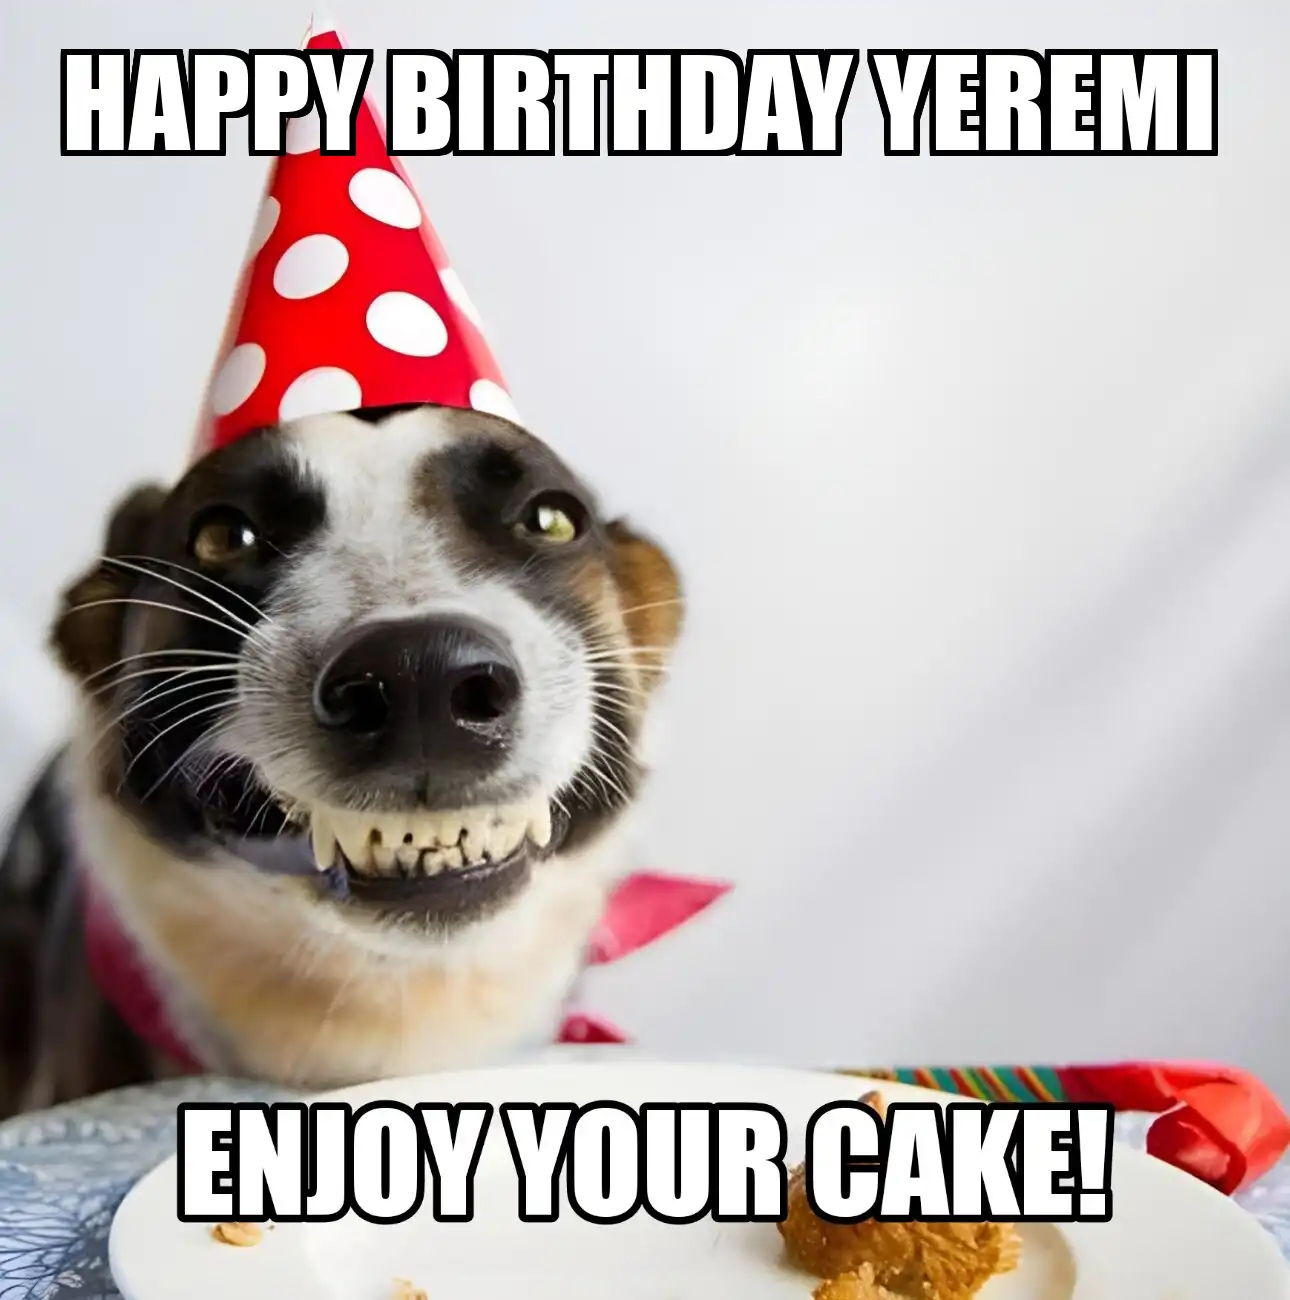 Happy Birthday Yeremi Enjoy Your Cake Dog Meme